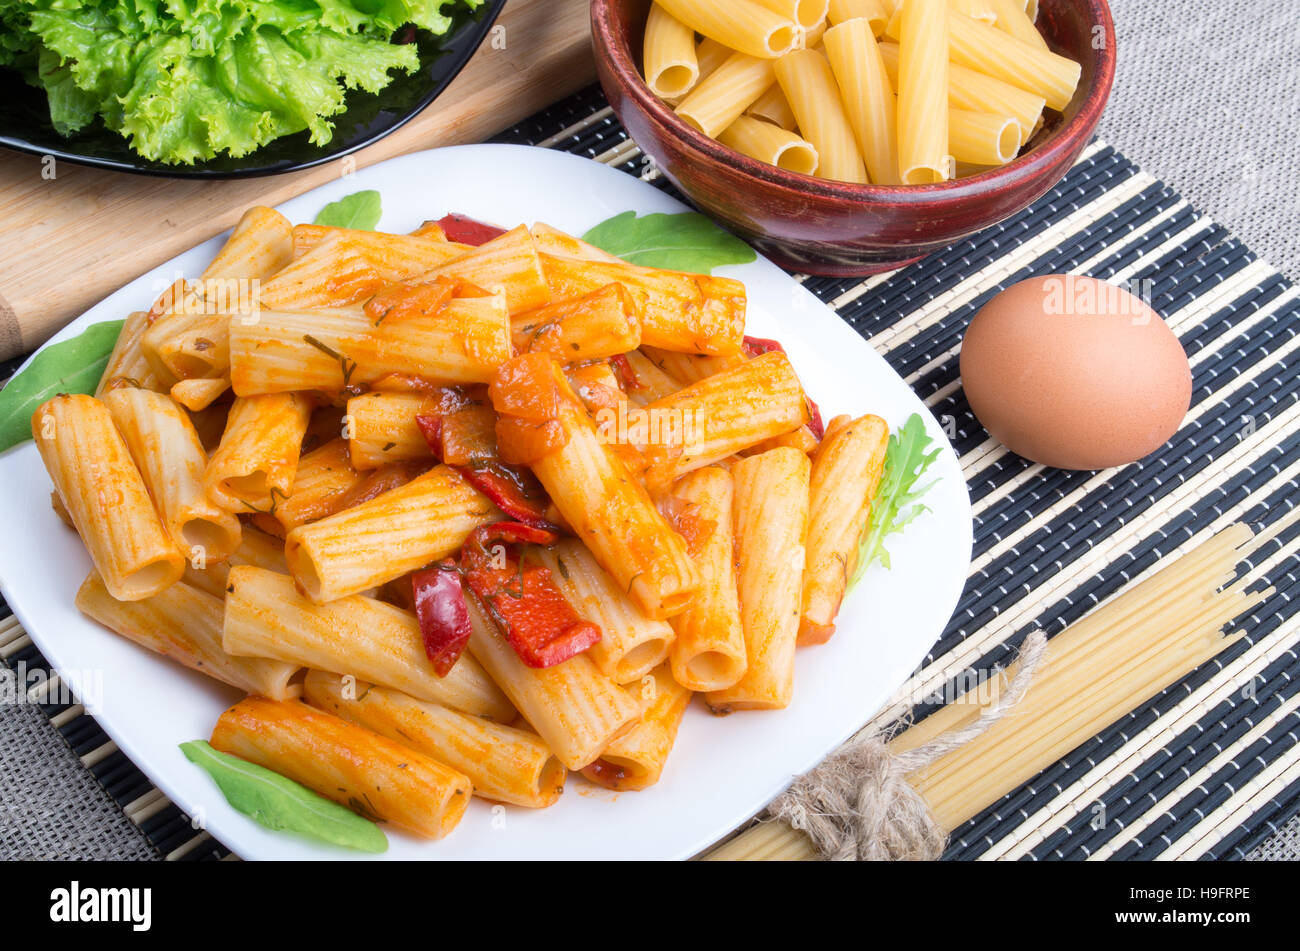 Draufsicht auf einen Teller Rigatoni-Nudeln mit Gemüse-Sauce, zusammen mit einem Teller mit Salat und Zutaten zum Kochen Stockfoto